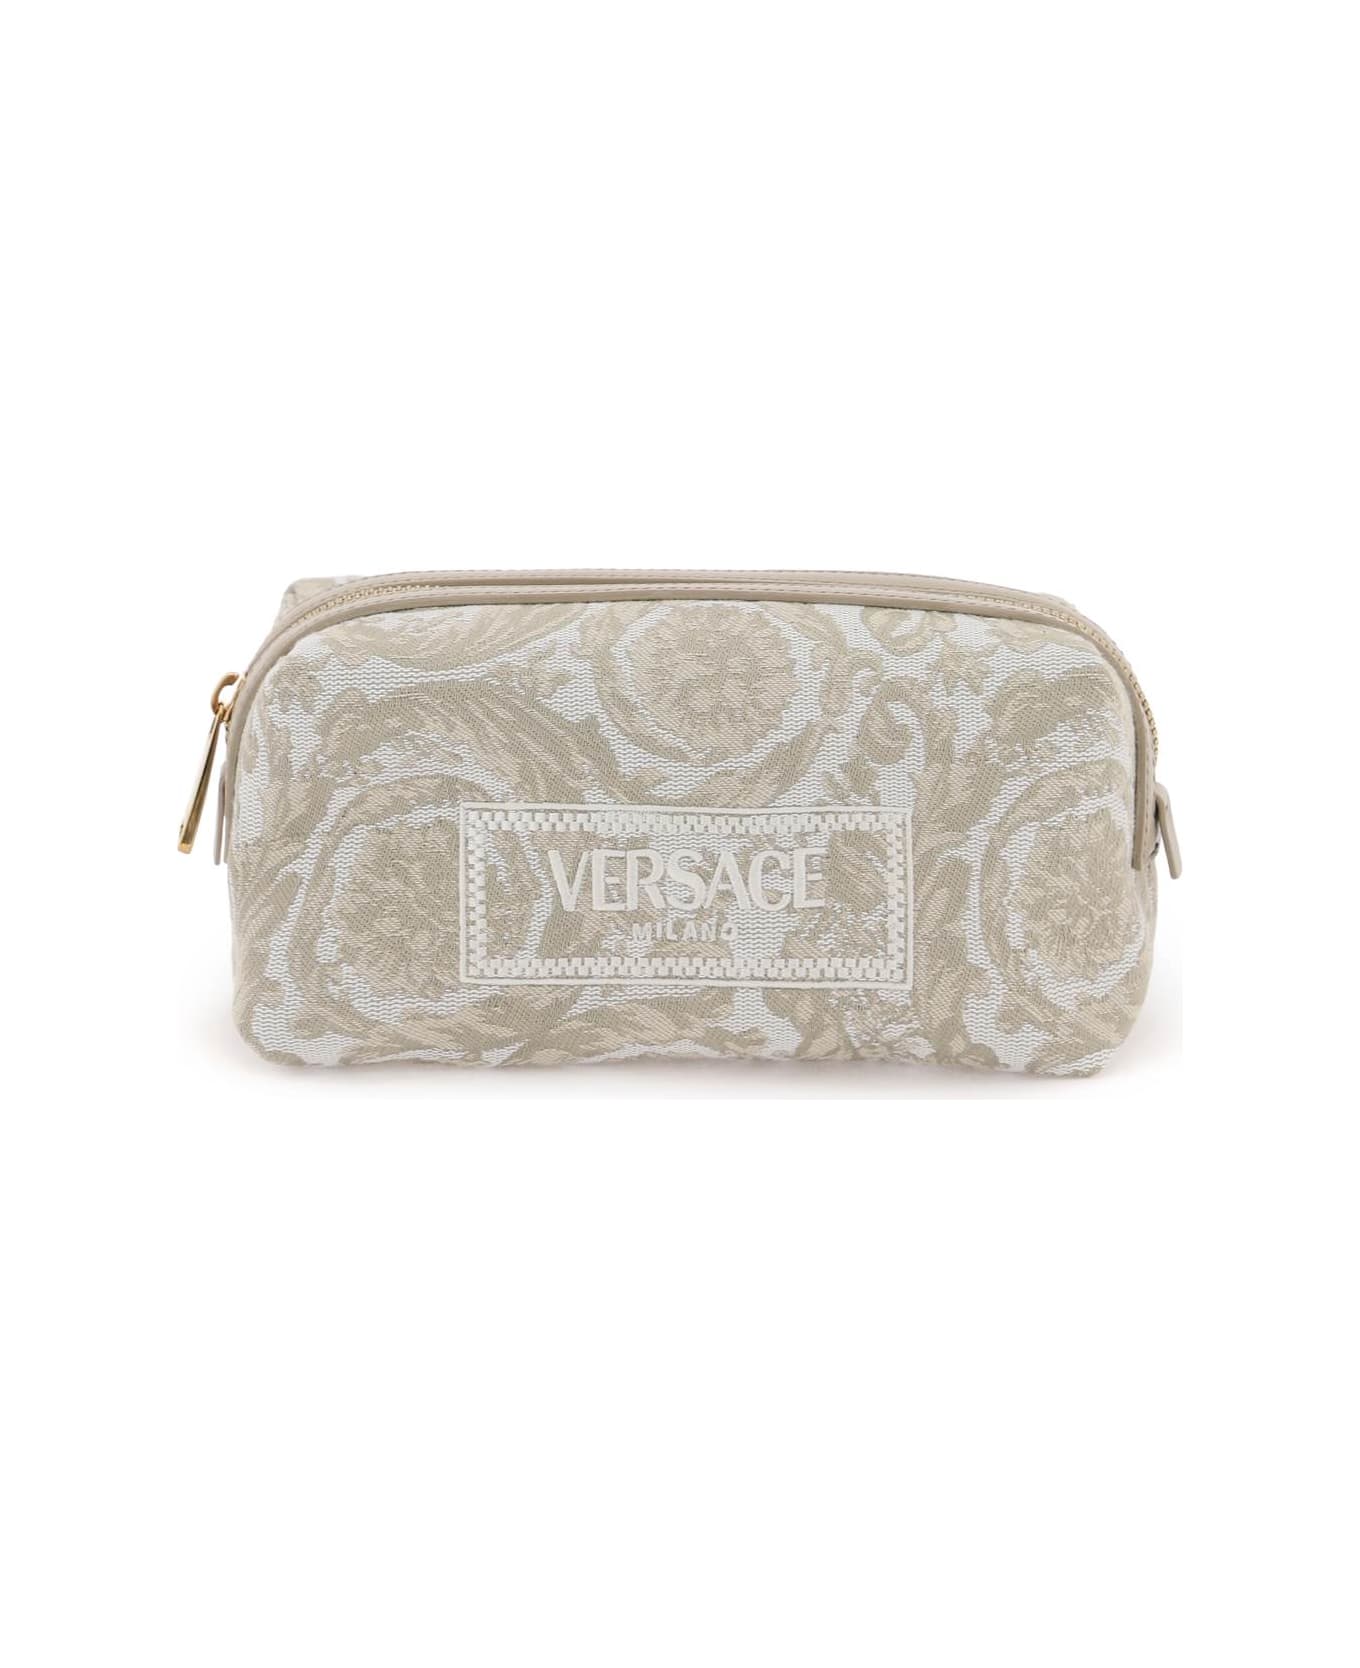 Versace Barocco Vanity Case - BEIGE BEIGE VERSACE GOLD (White) クラッチバッグ